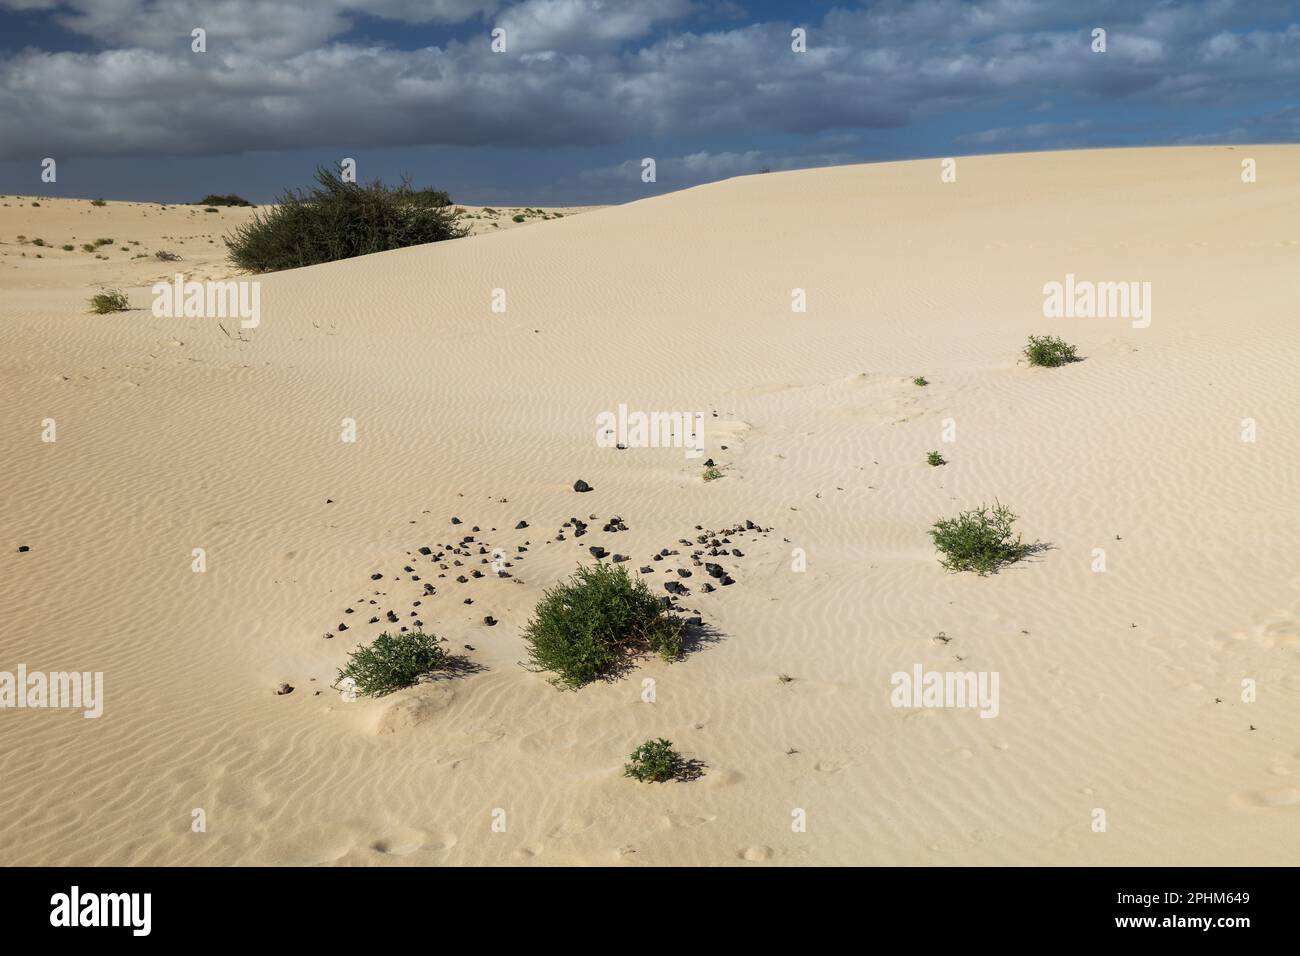 Paesaggio desertico con dune e onde di sabbia con la pianta di Searocket europeo Foto Stock